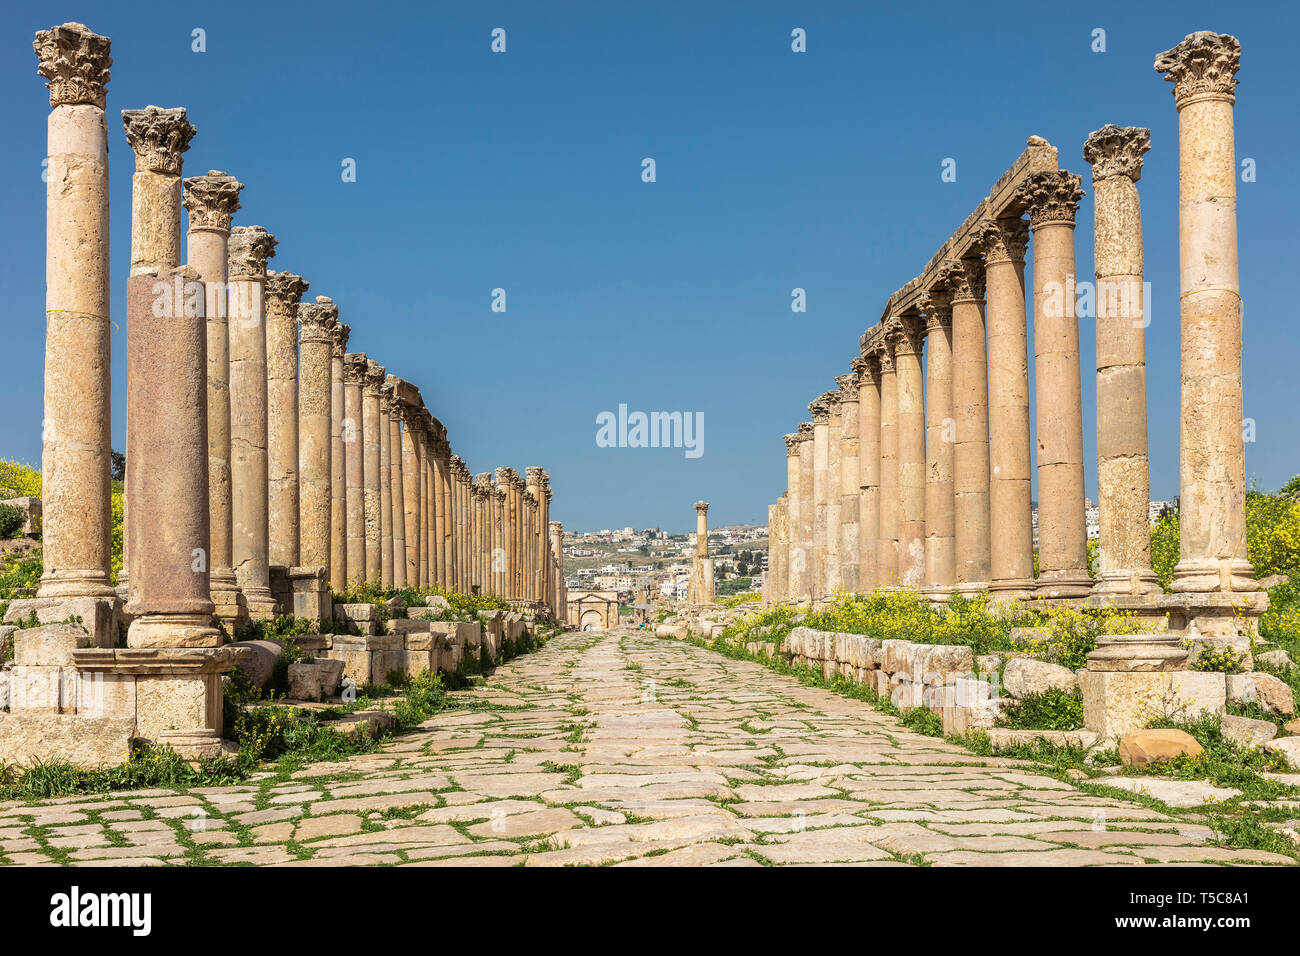 Ammán, Jordania. Detalle de columnas romanas en el interior de la ciudadela, conocido sitio arqueológico de destino turístico. Foto de stock